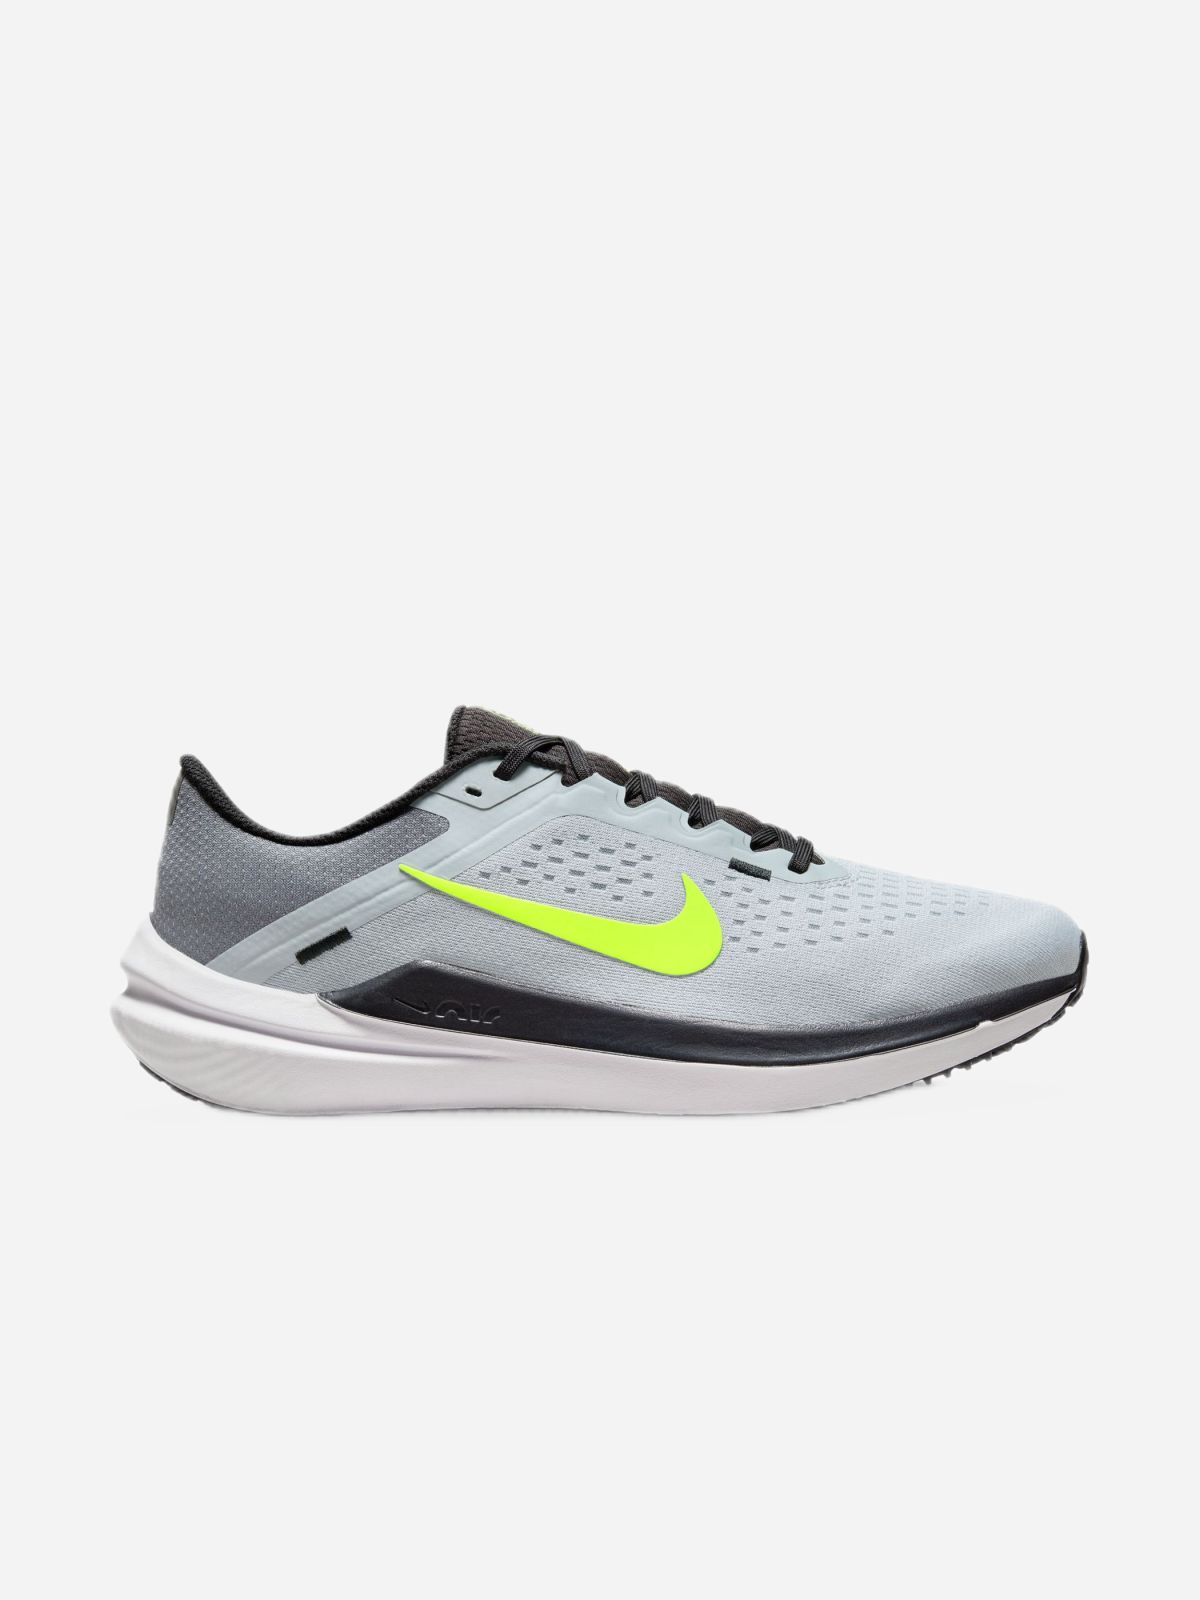  נעלי ריצה Nike Air Winflo 10 / גברים של NIKE